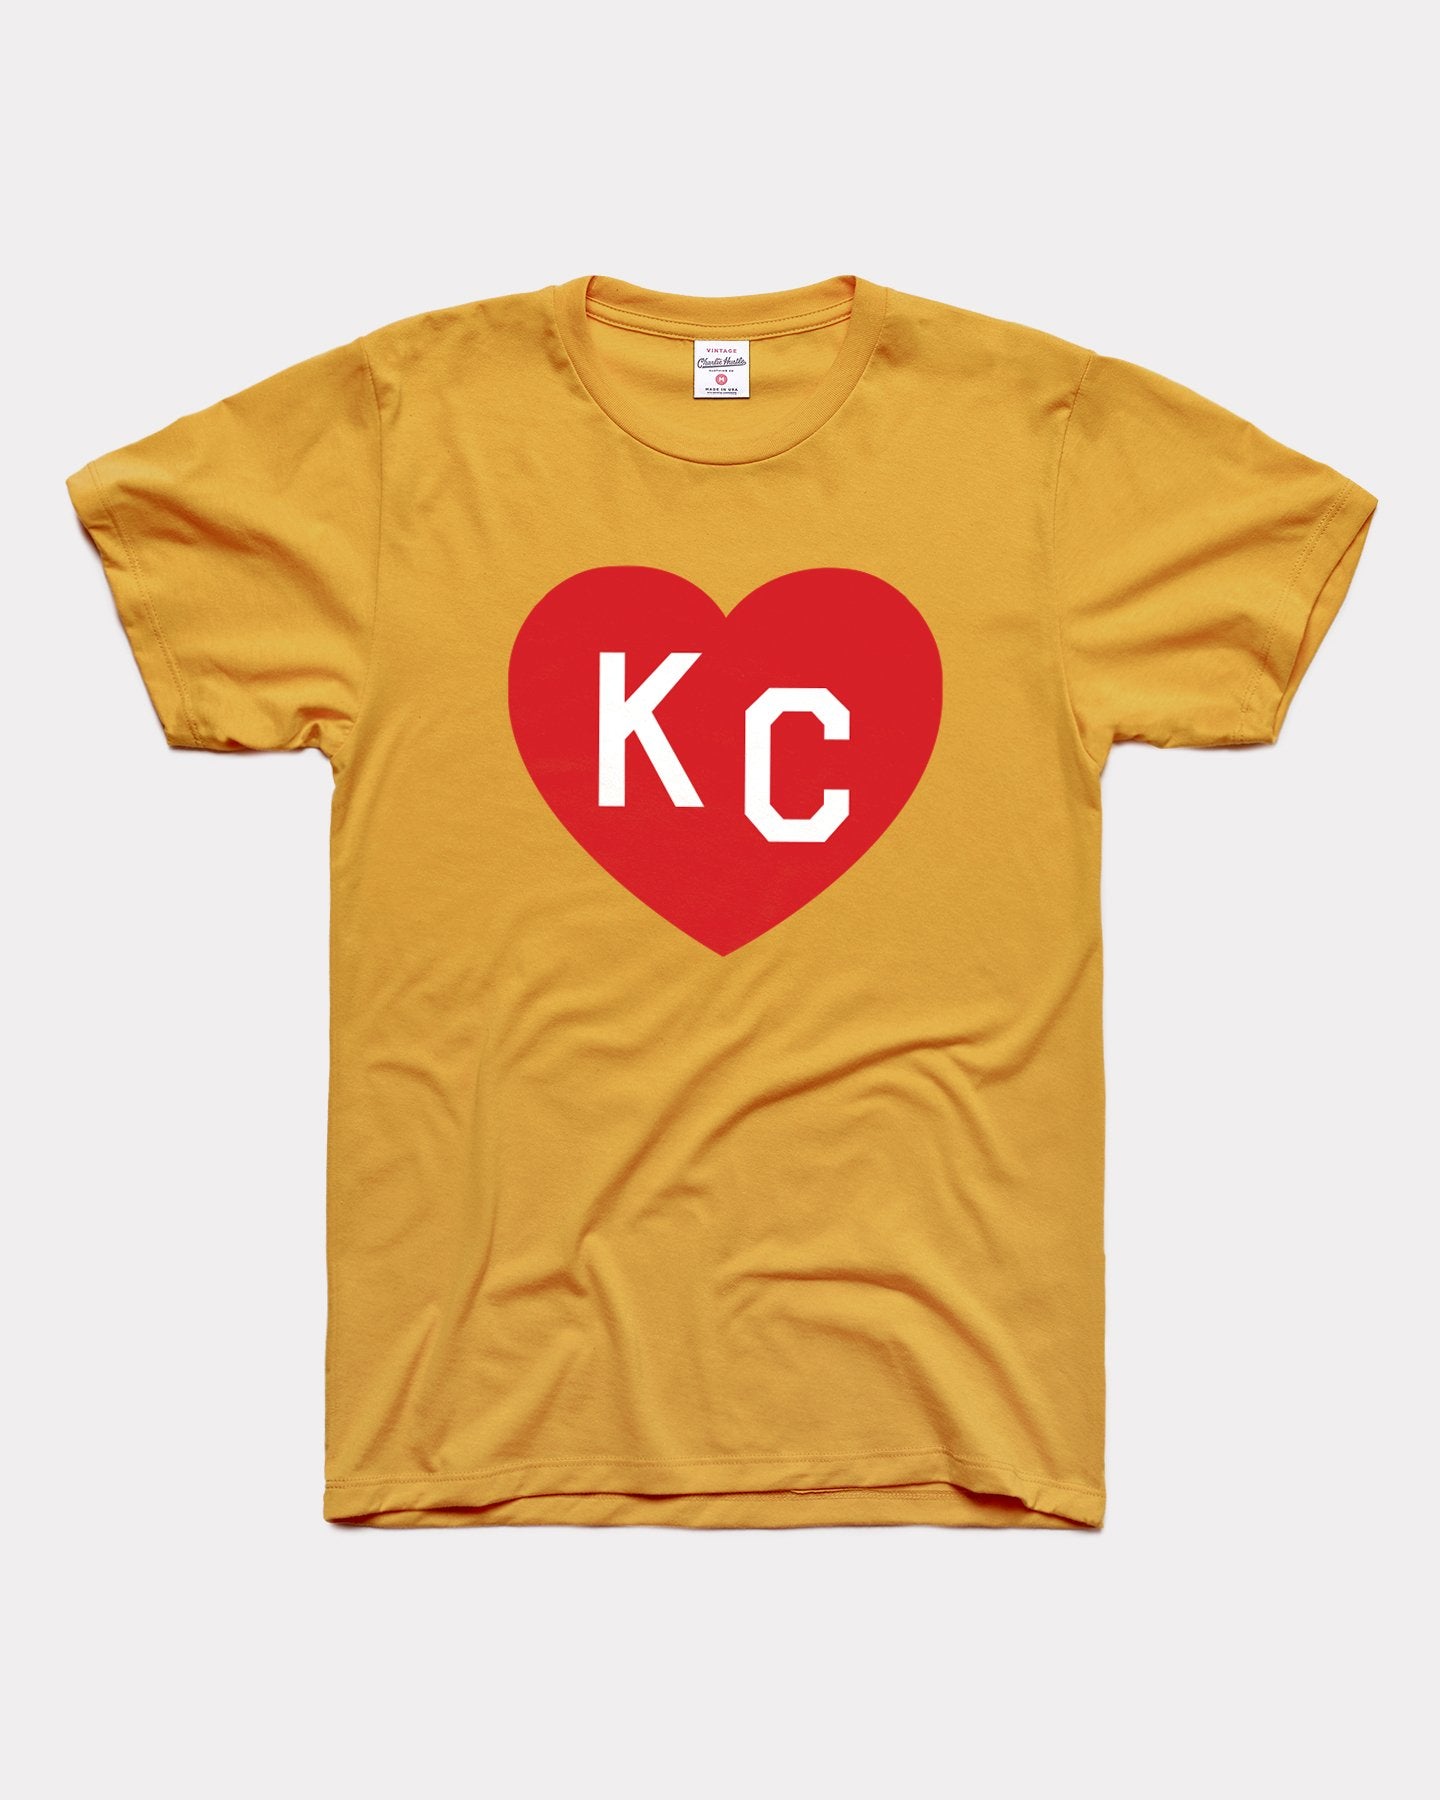 Gold & Red KC Heart Vintage T-Shirt | Charlie Hustle 18 / M